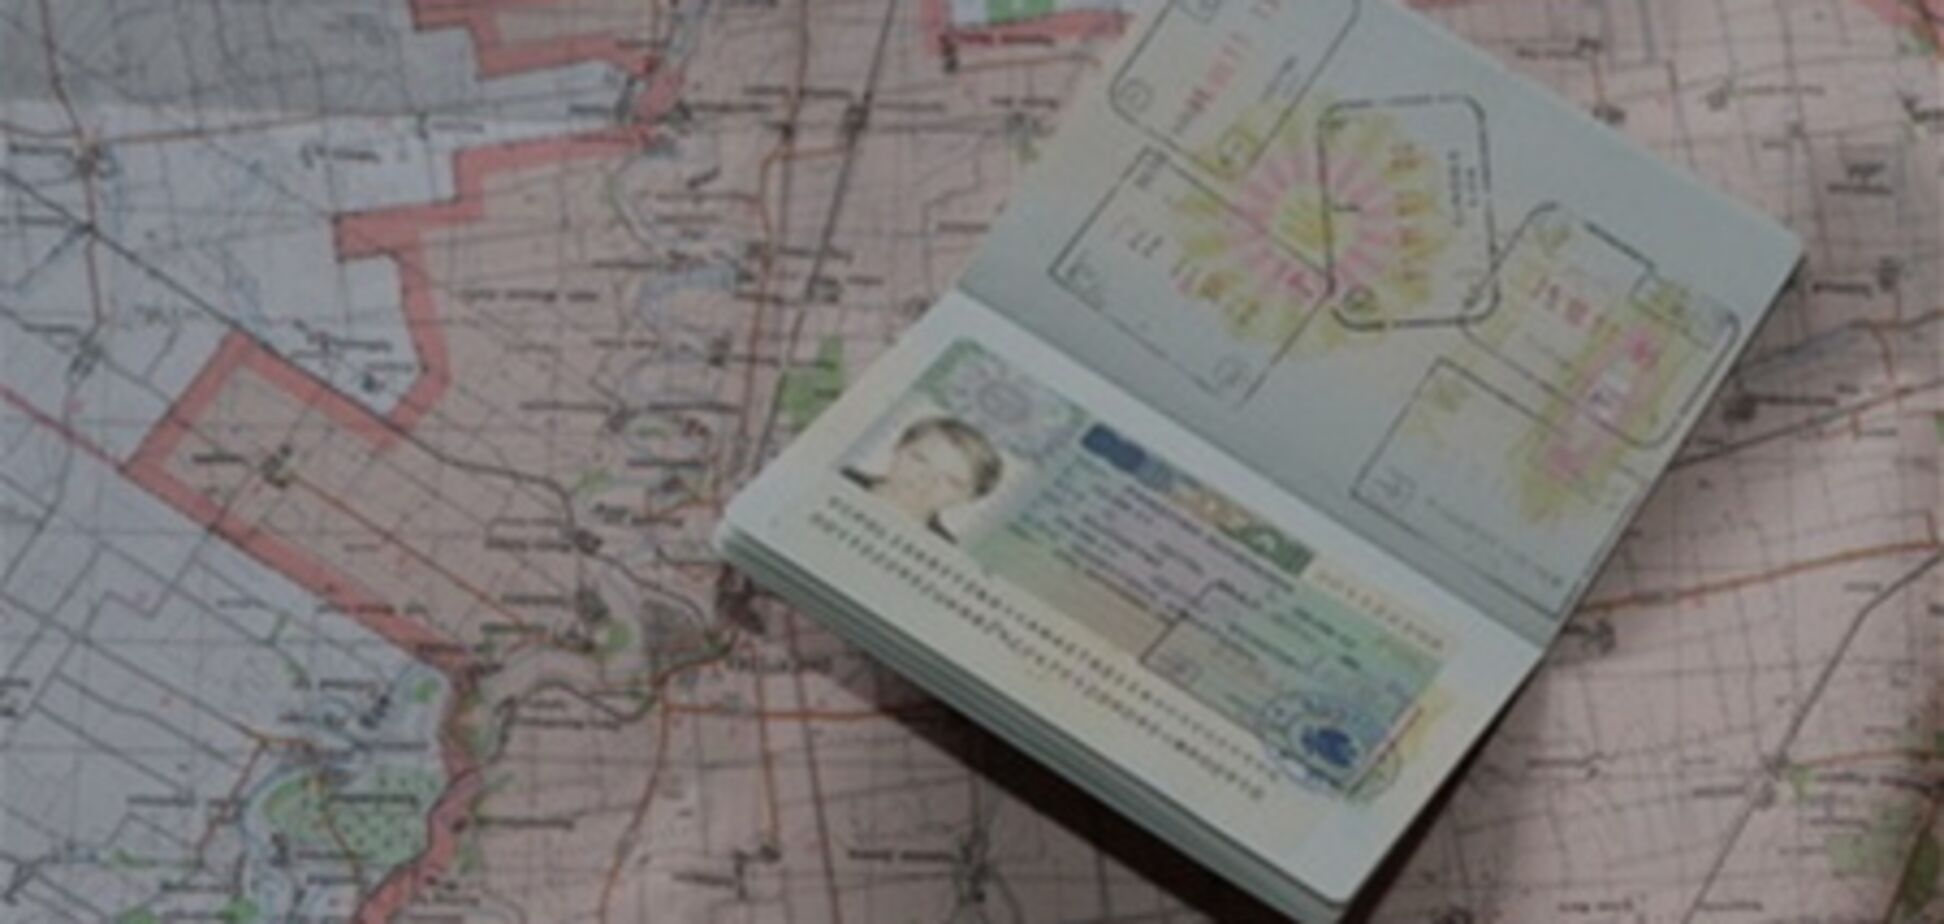 Украинцам упростили получение шенгенских виз